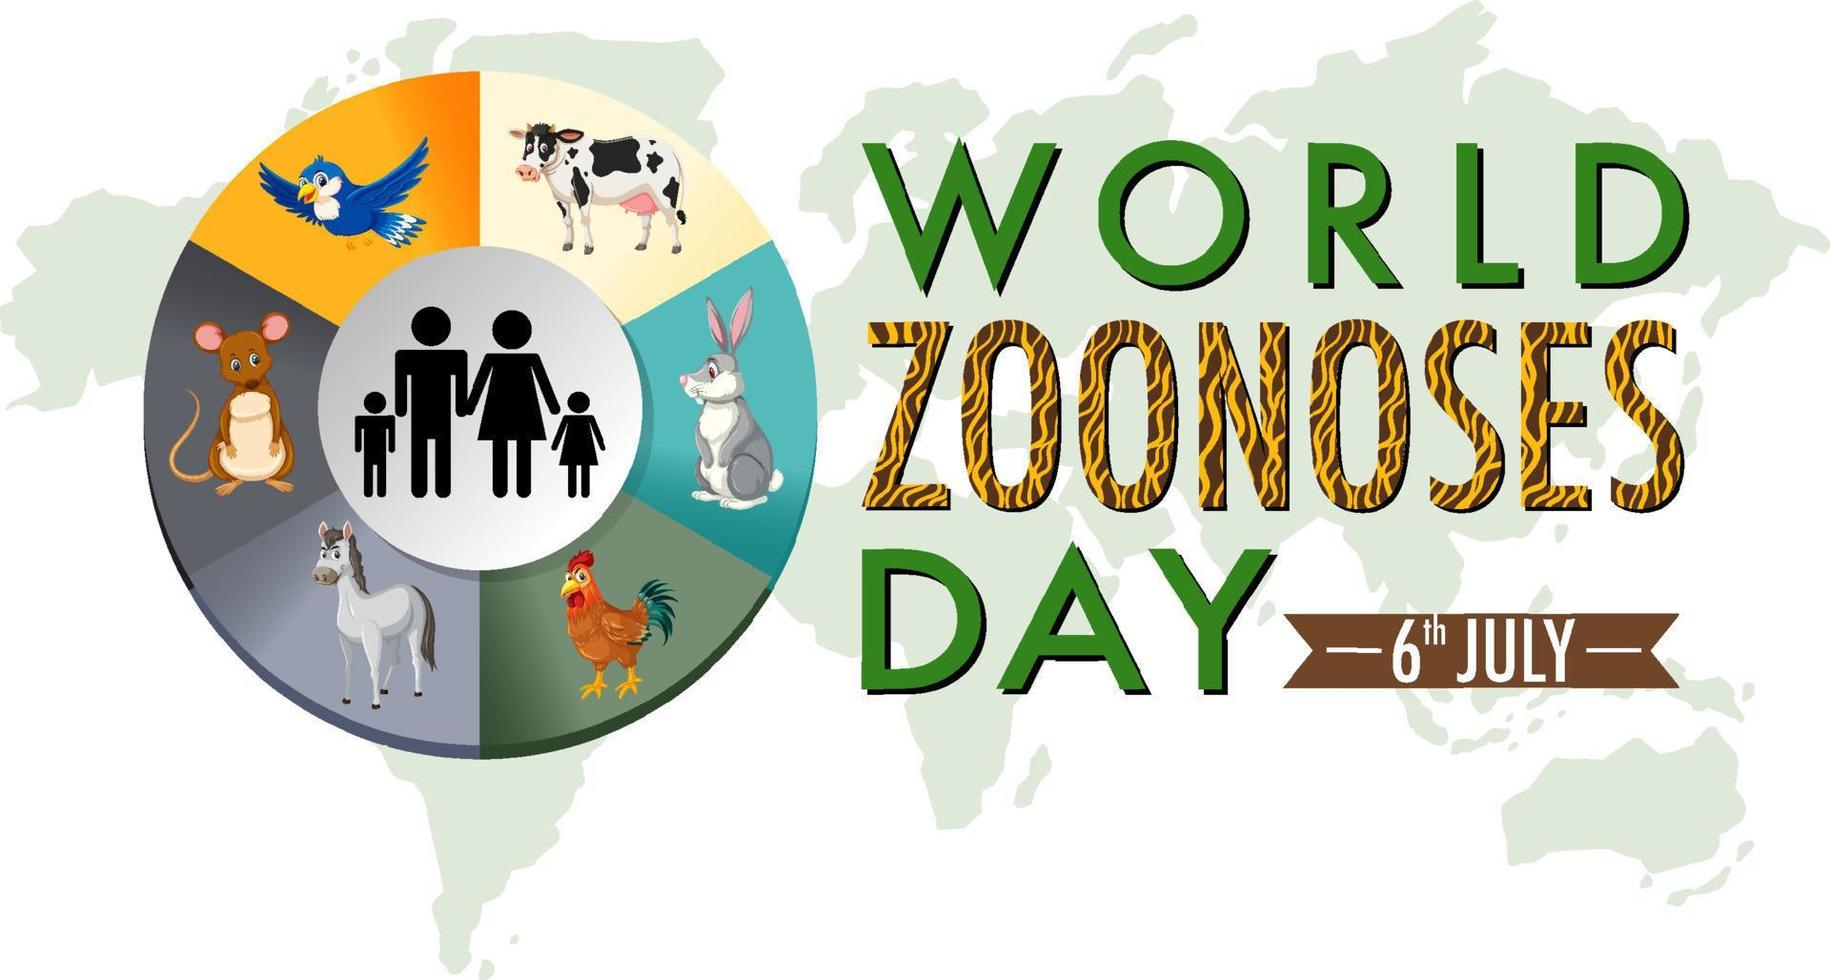 conception d'affiche pour la journée mondiale des zoonoses vecteur